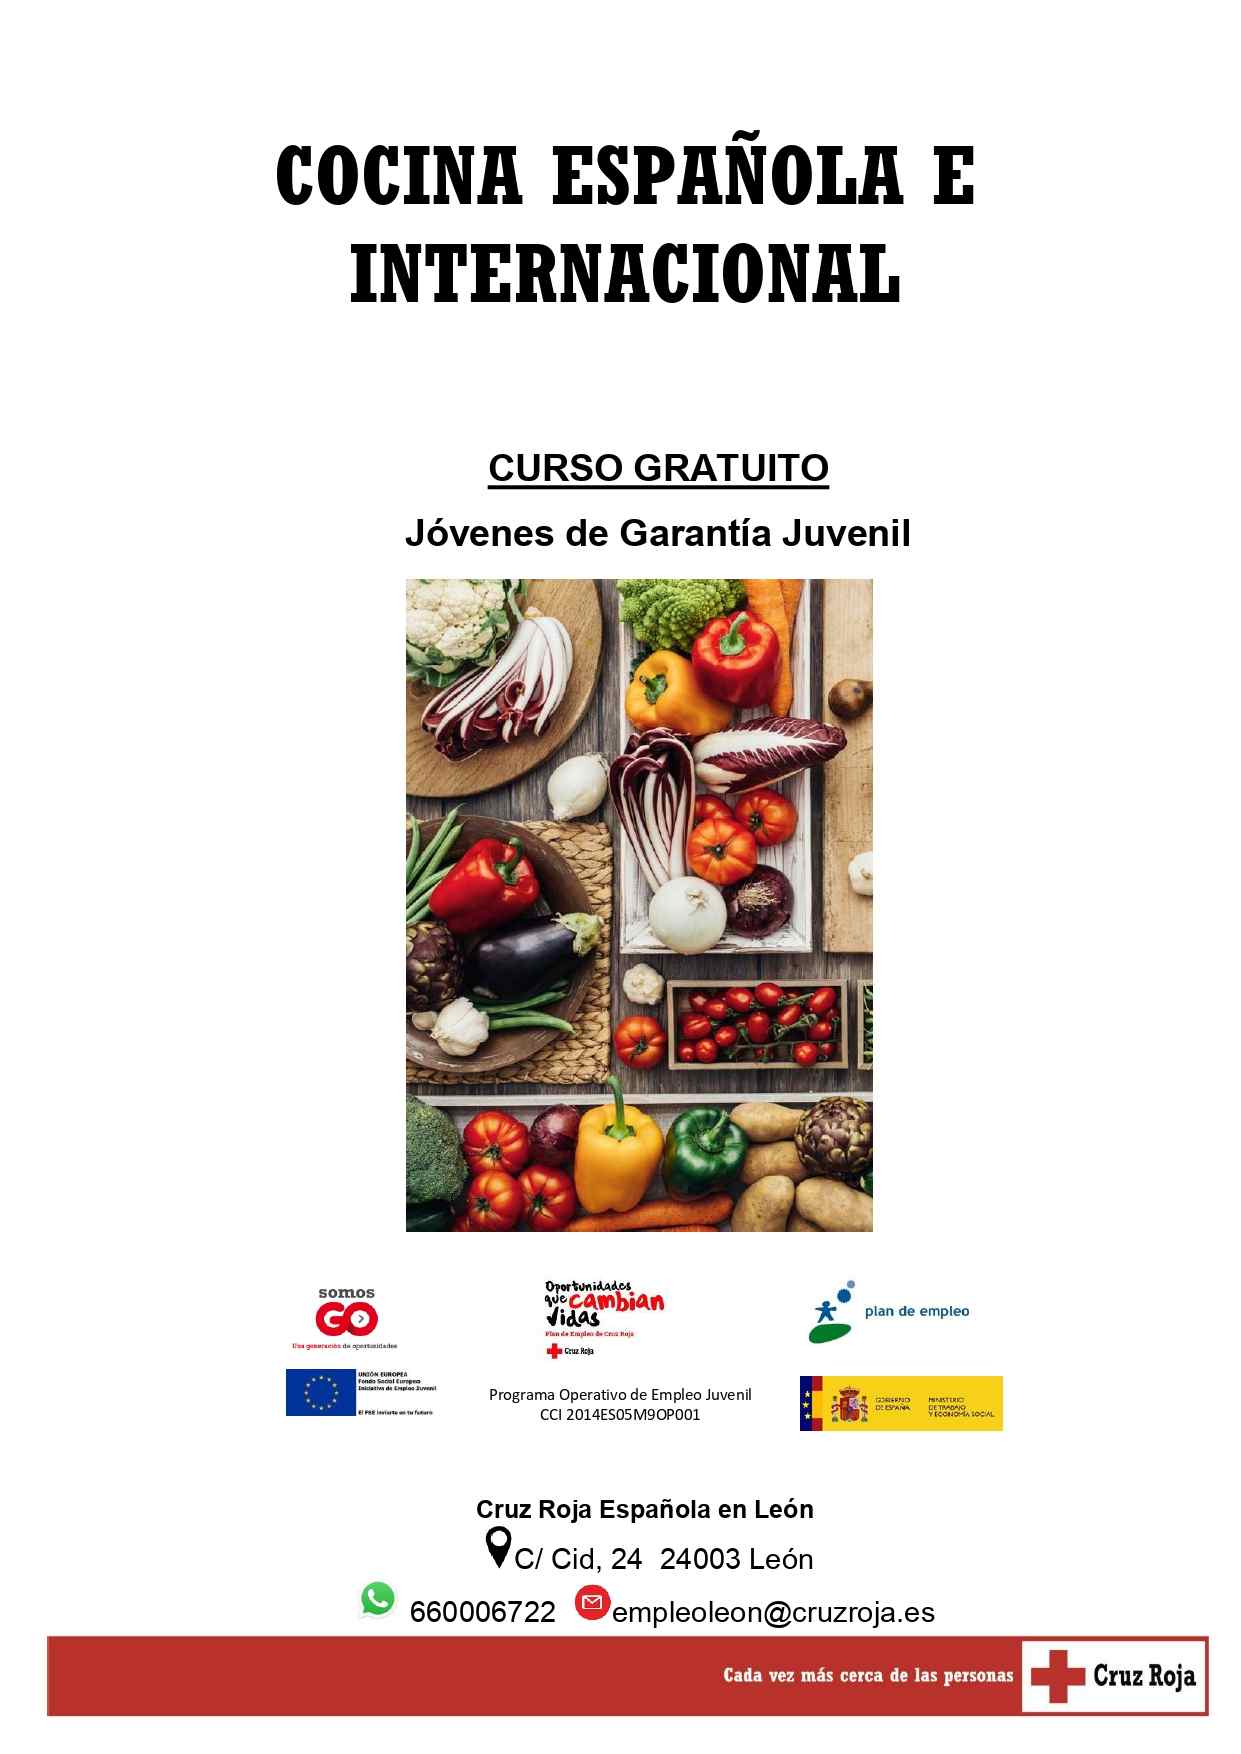 Curso gratuito de ＂Cocina Española e Internacional＂ para jóvenes en Garantía Juvenil de Cruz Roja Española.